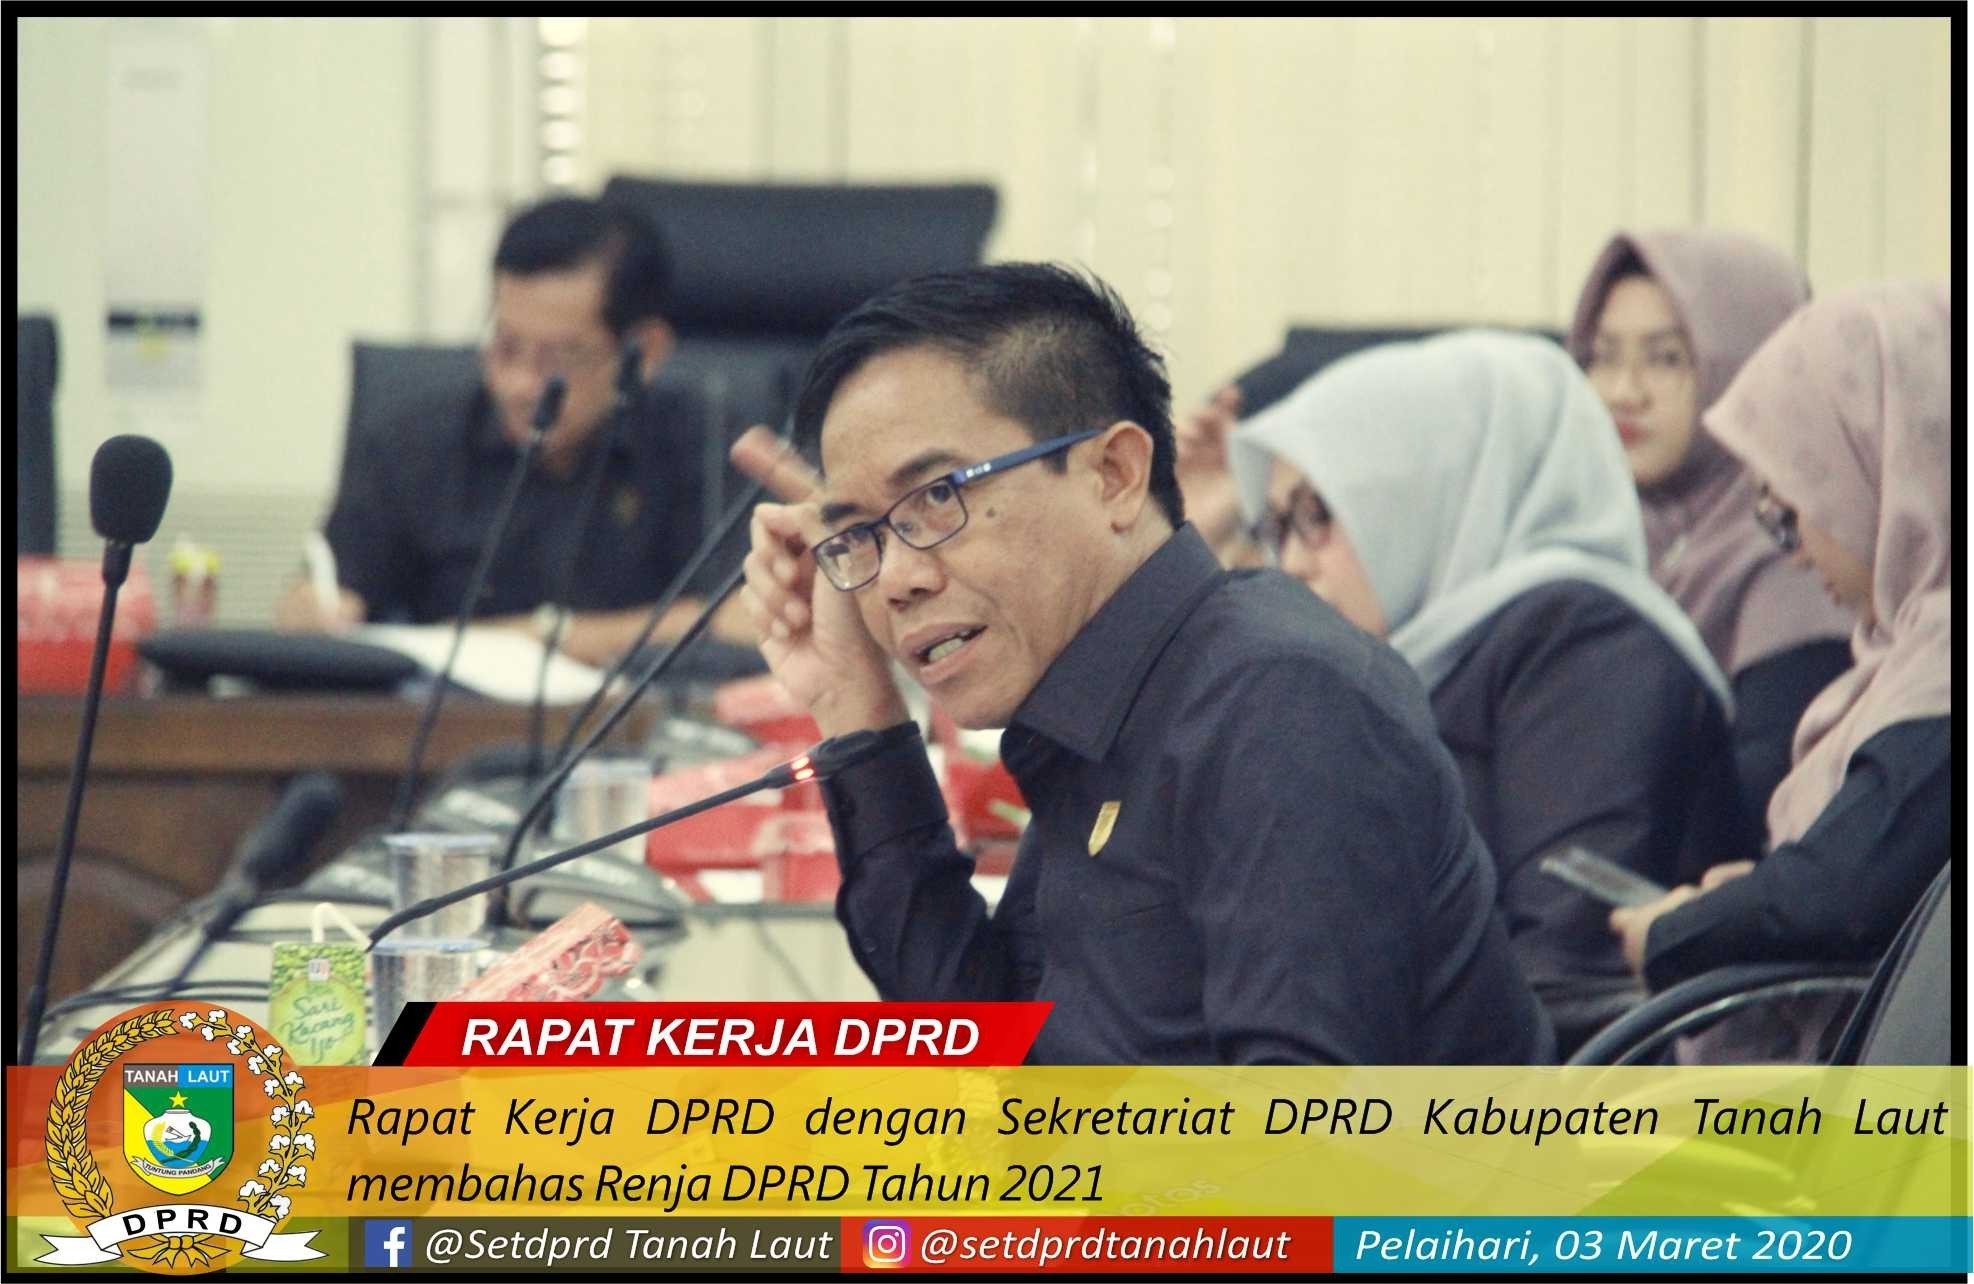 Rapat Kerja DPRD dengan Sekretariat DPRD Kabupaten Tanah Laut